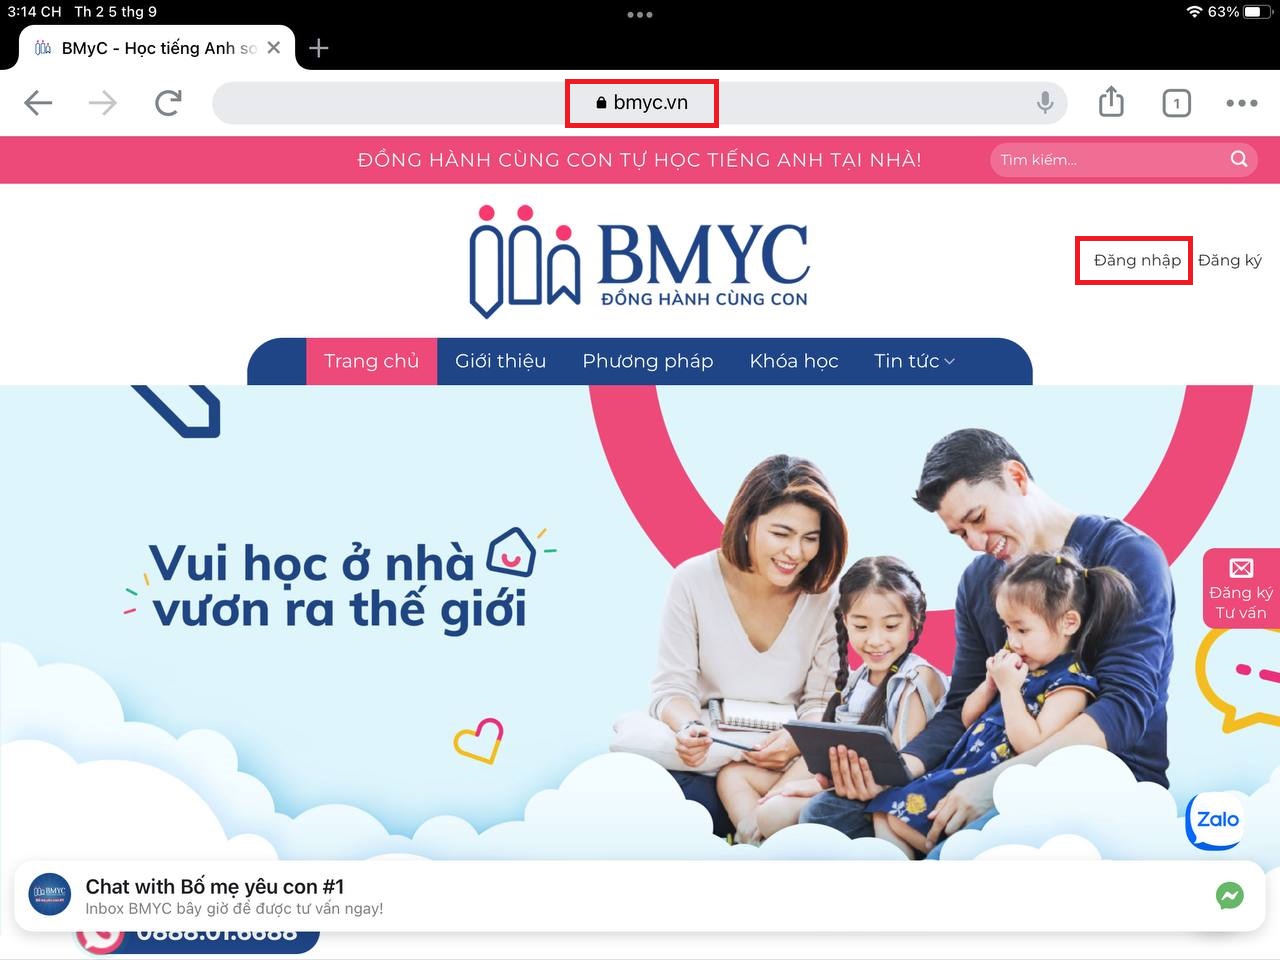 Truy cập trang web bmyc.vn để đăng nhập tài khoản